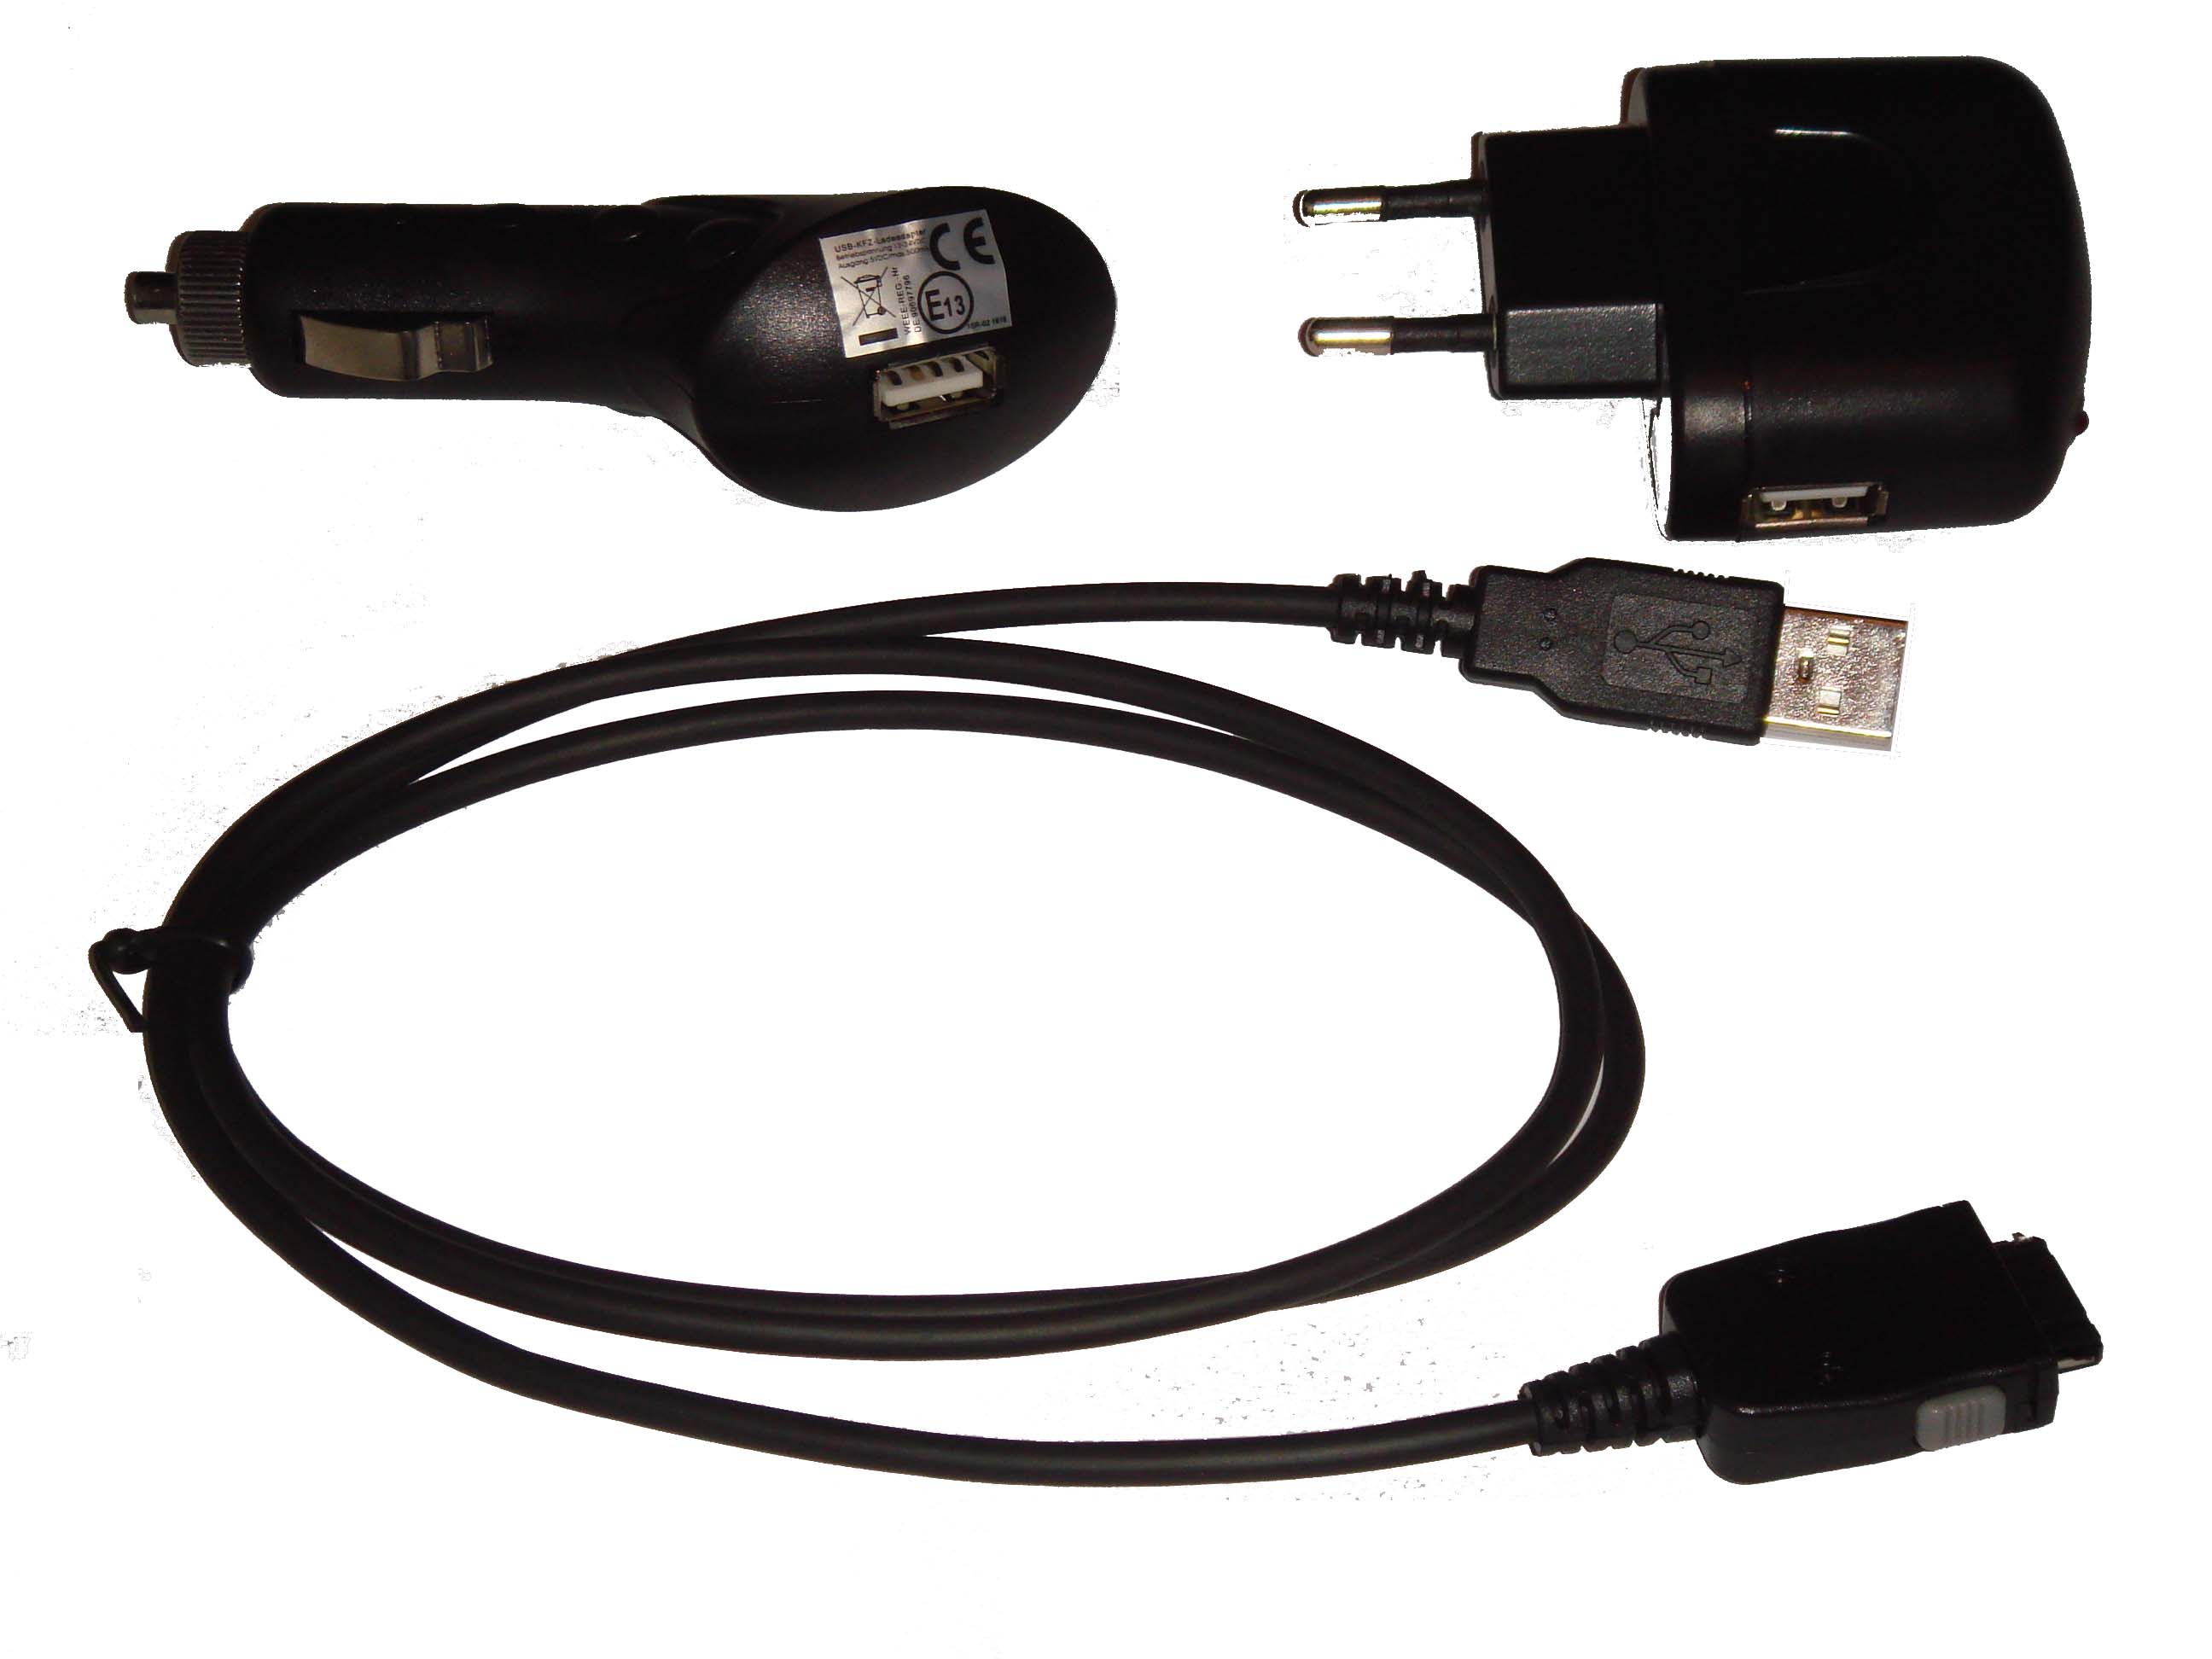 Akcesoria do nawigacji Yakumo Delta X - ładowarka samochodowa, adapter, kabel USB